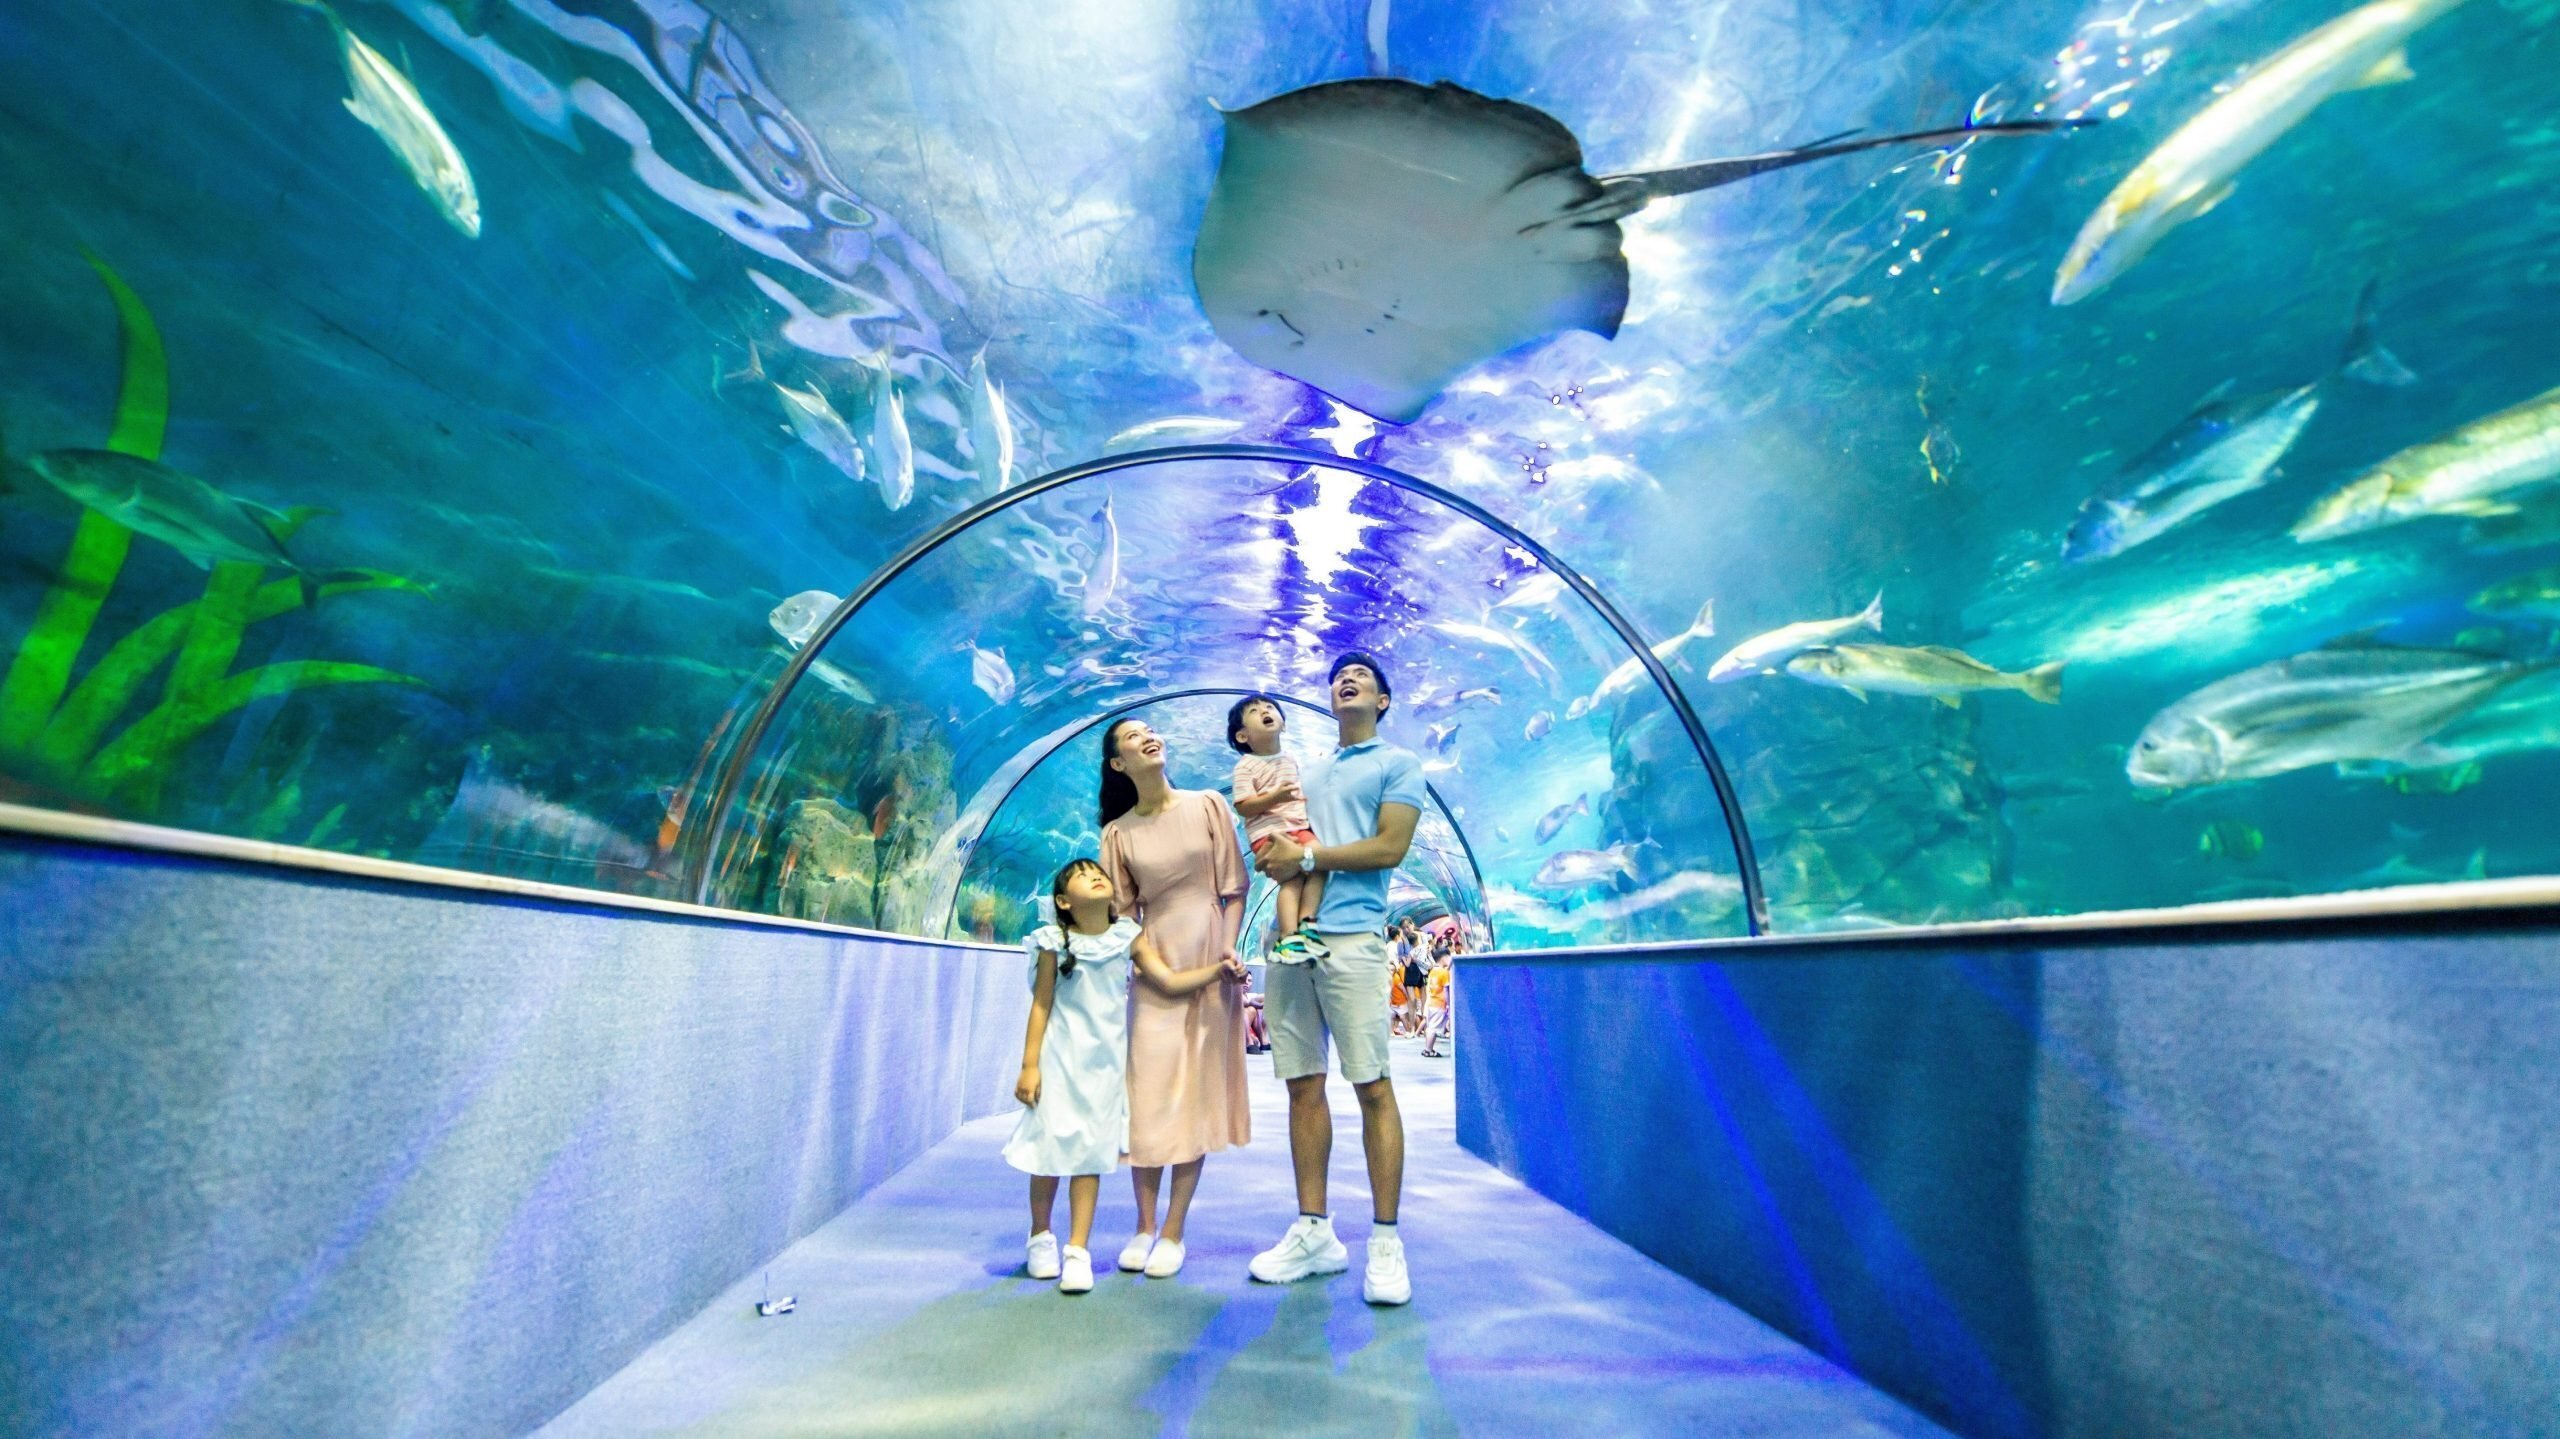 Nếu có thời gian rảnh vào cuối tuần thì Vinpearl Aquarium Times City chính là điểm đến thú vị dành cho bạn và gia đình vui chơi.